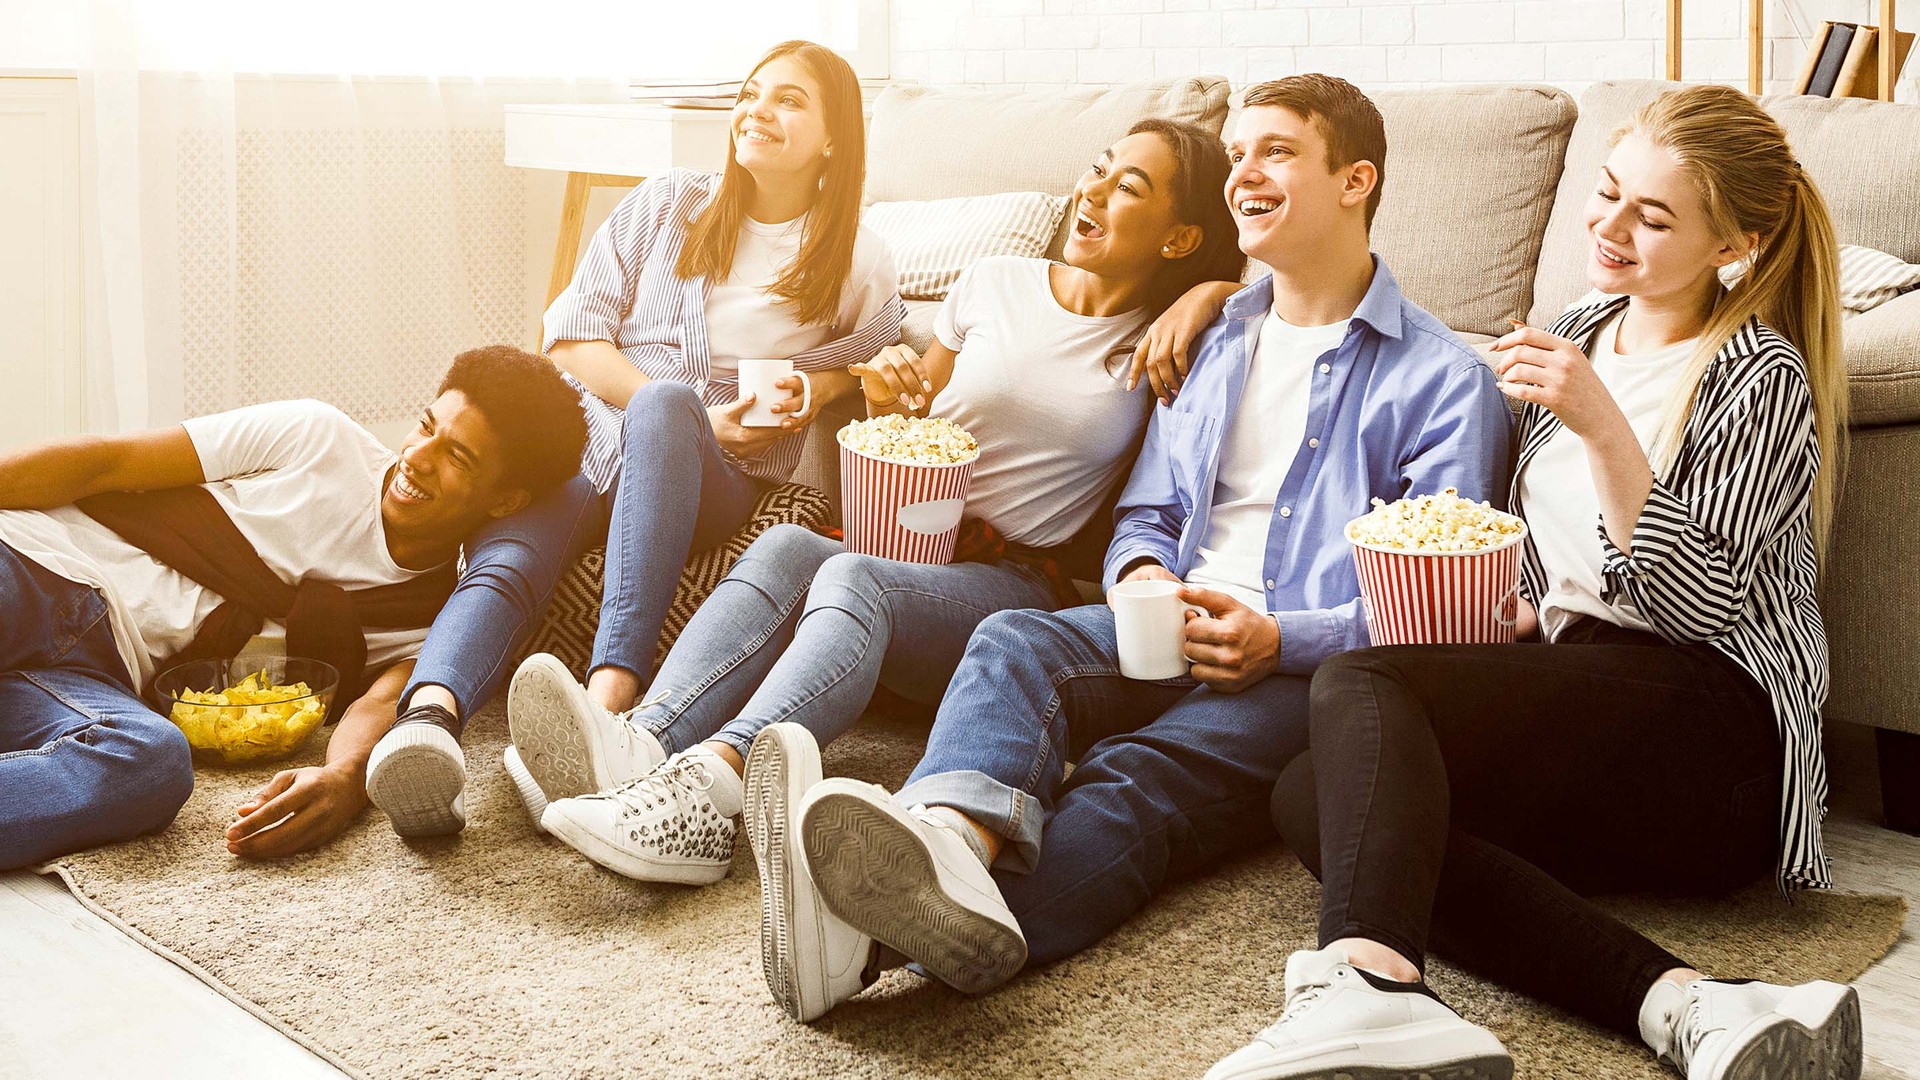 Jugendliche sitzen vorm Fernseher und essen Popcorn